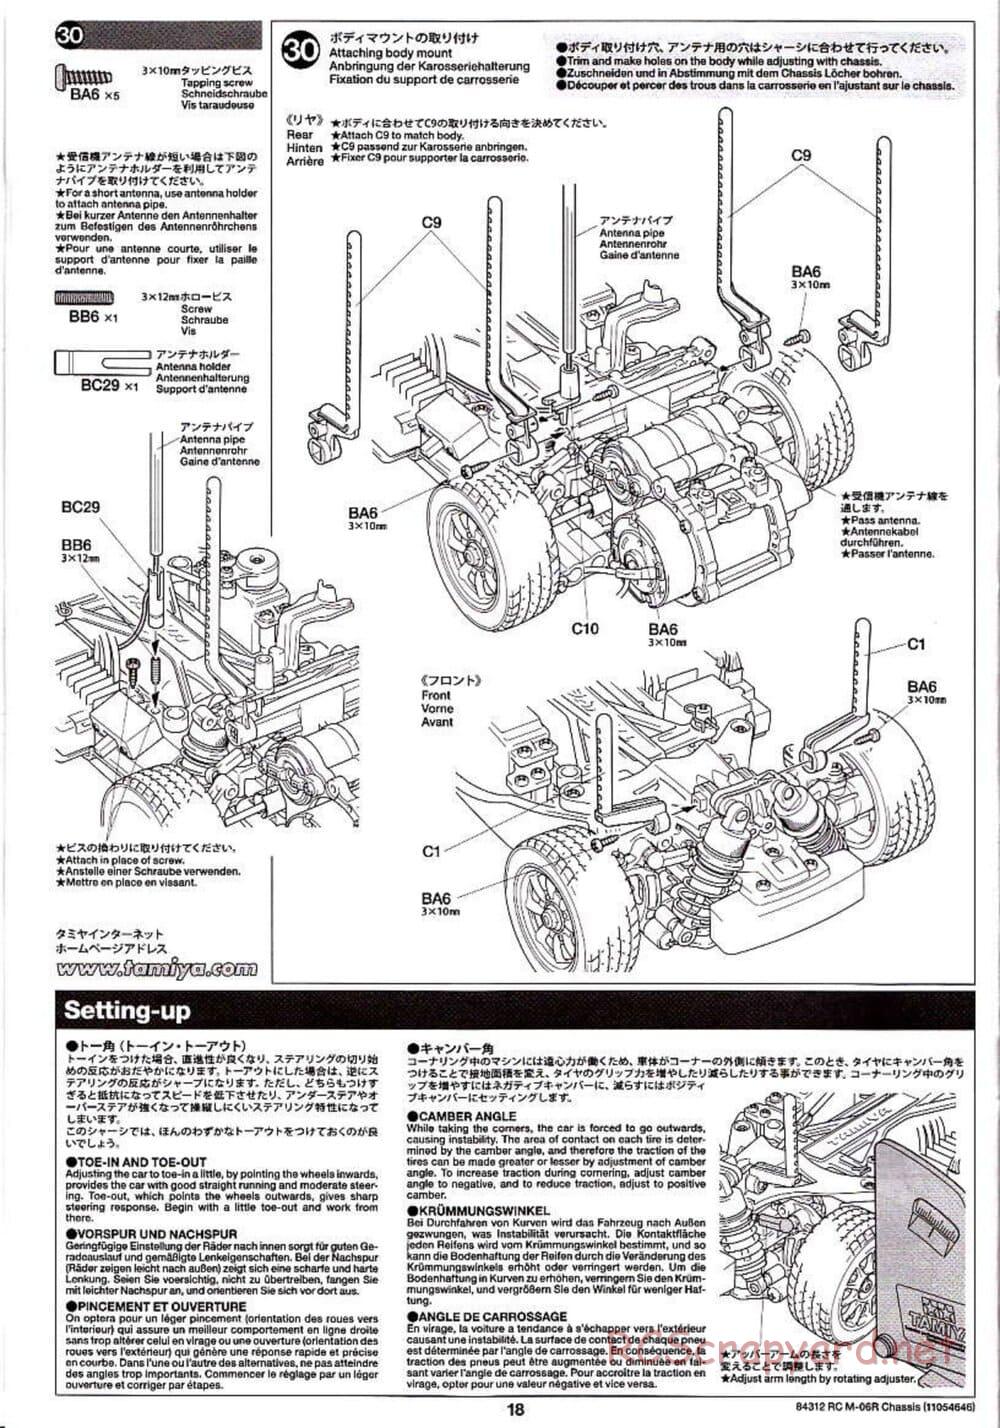 Tamiya - M-06R Chassis - Manual - Page 18